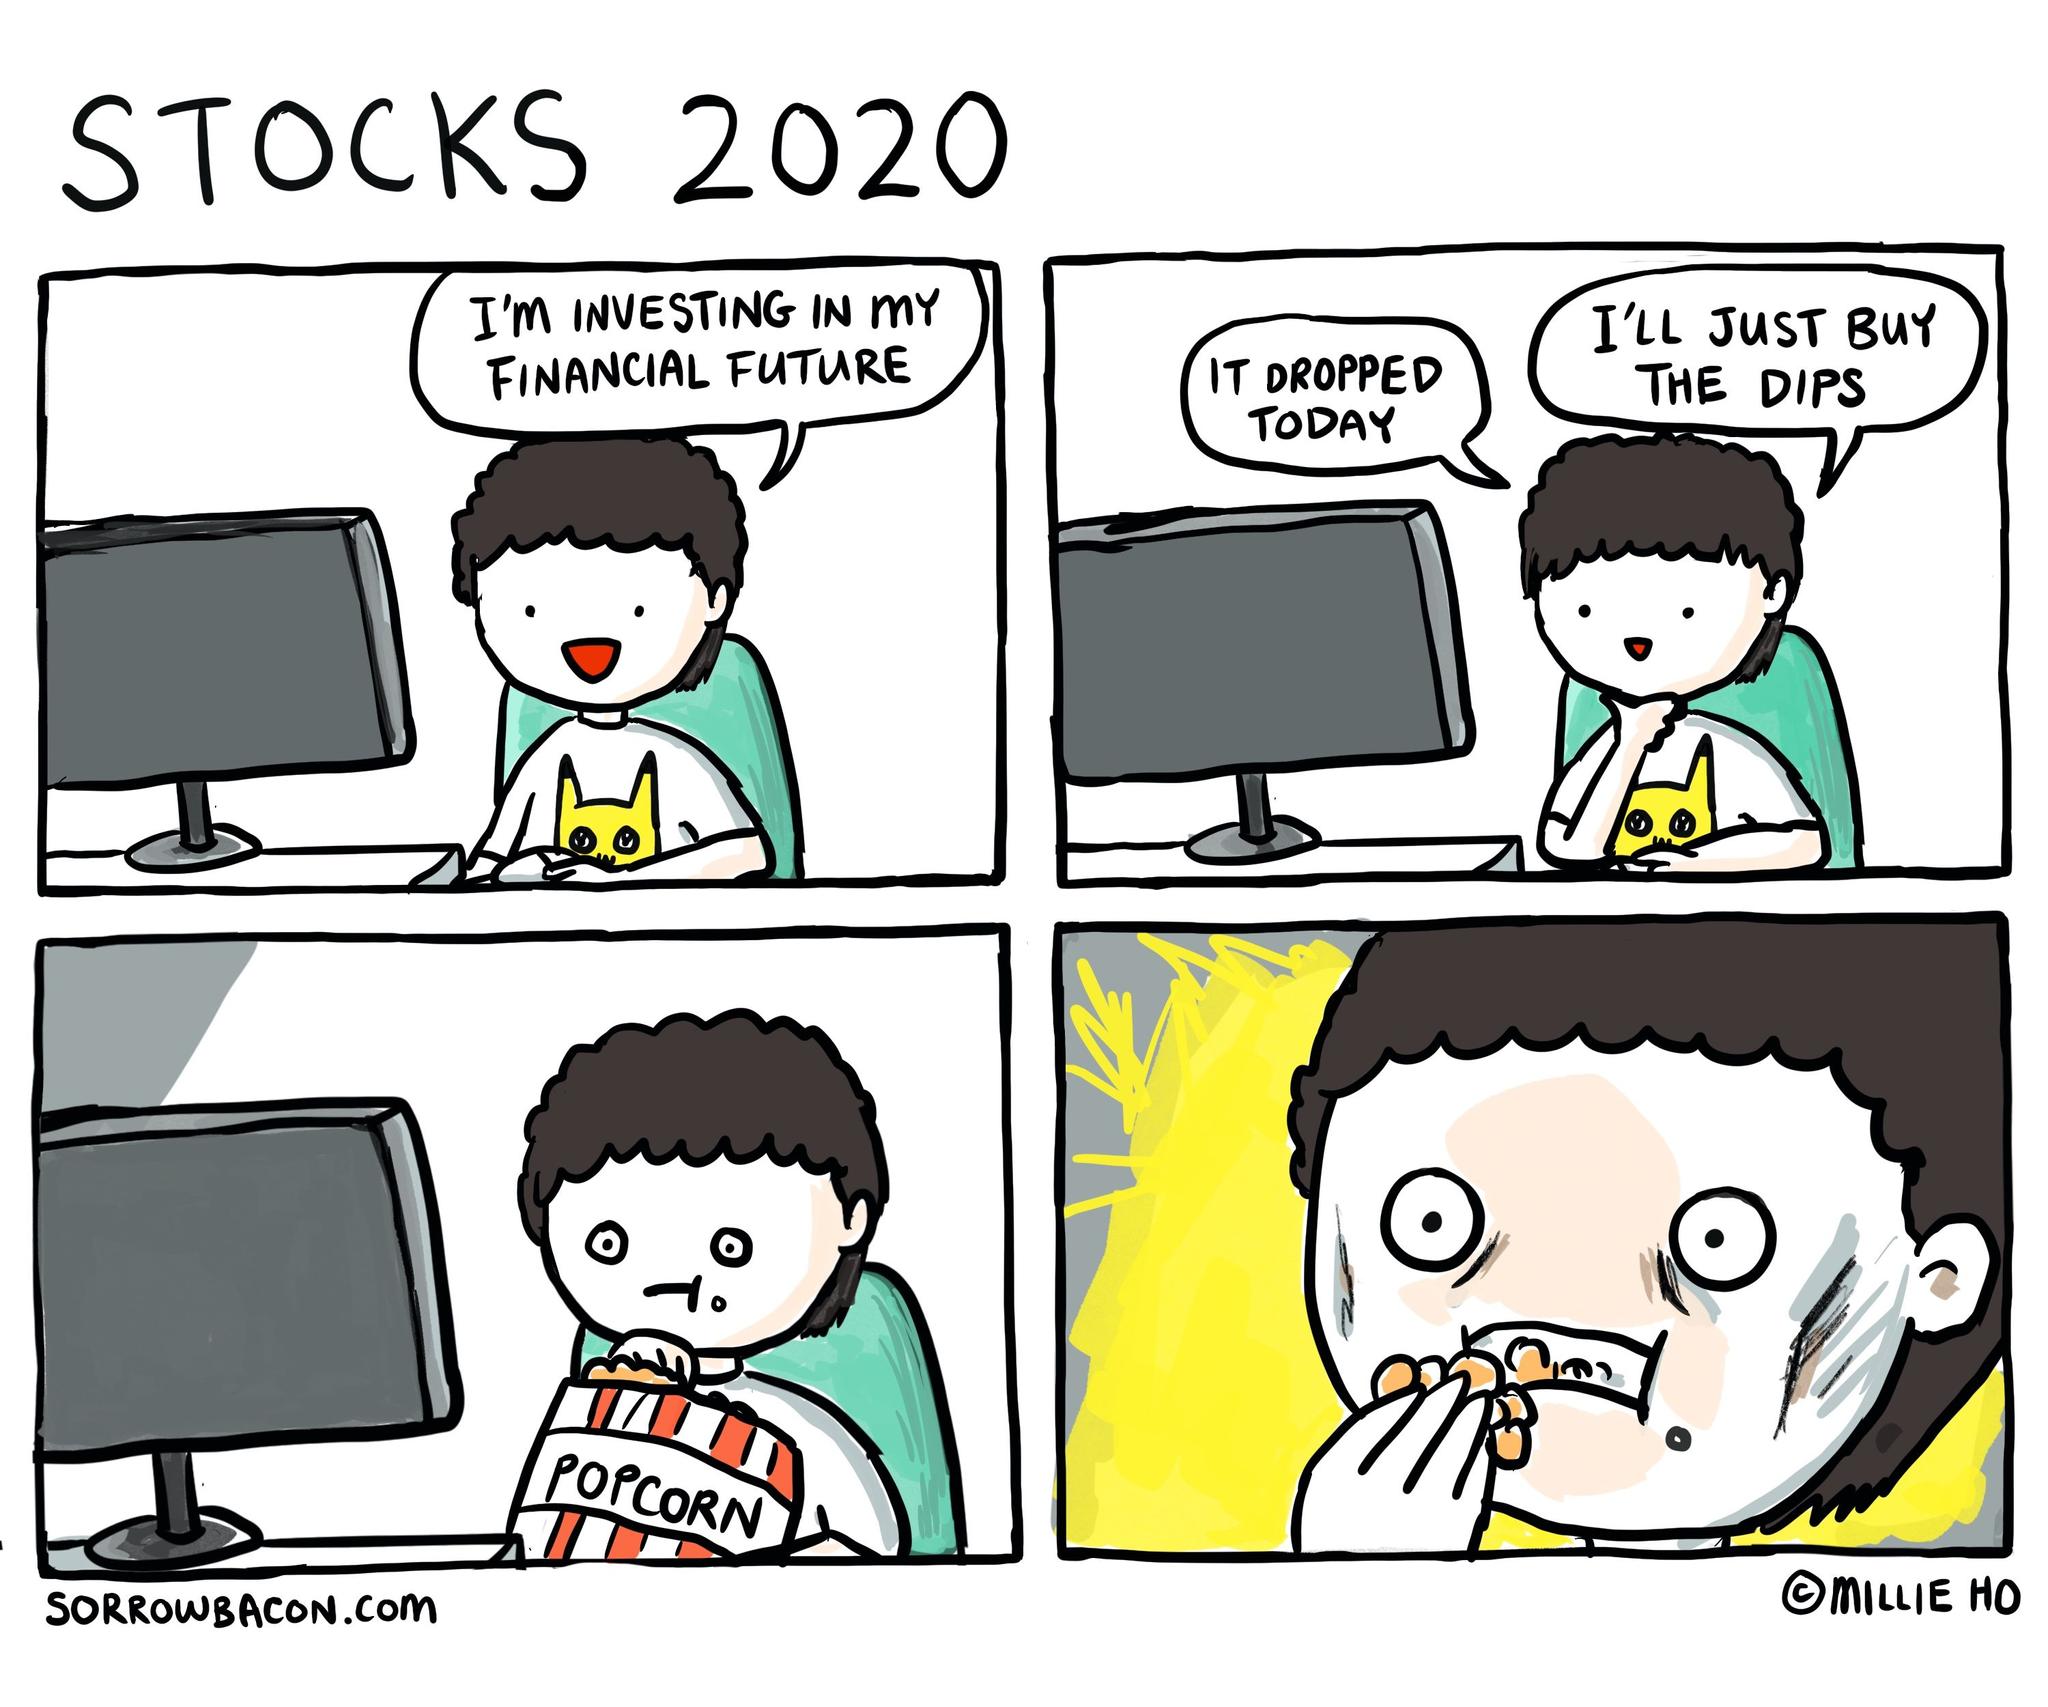 Stocks 2020 sorrowbacon comic